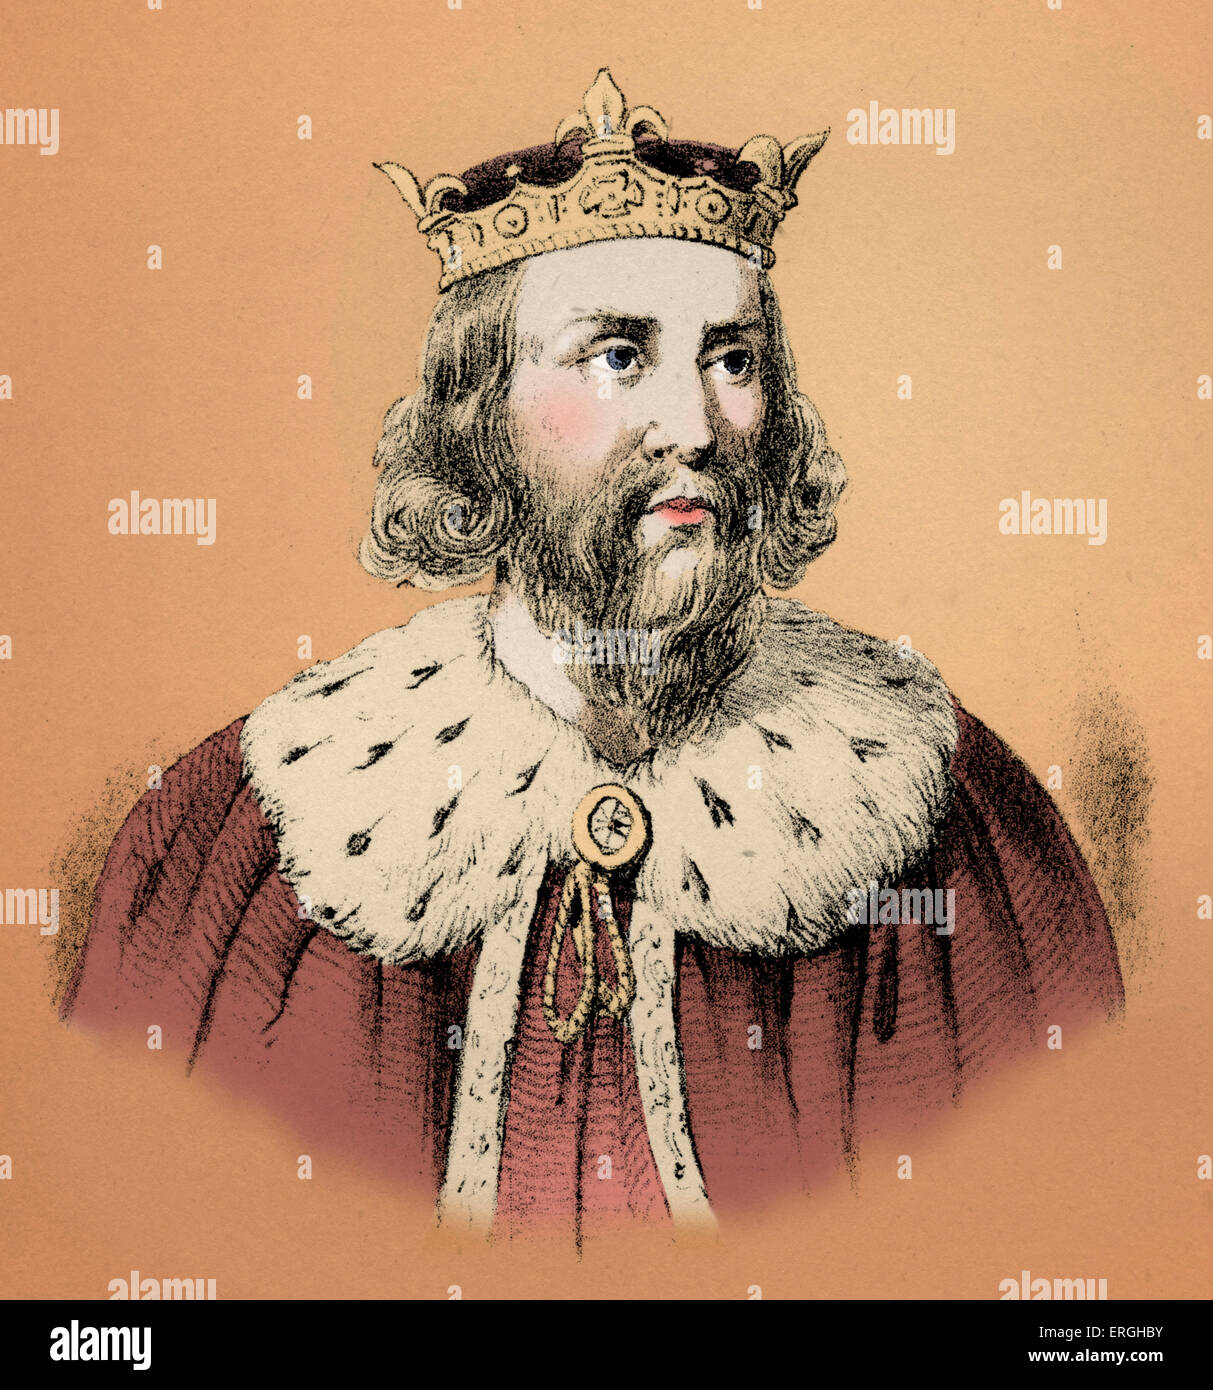 Alfred der große (849 – 899) war König von der südlichen angelsächsischen Königreich von Wessex von 871 bis 899. Alfred ist bekannt für seine Stockfoto